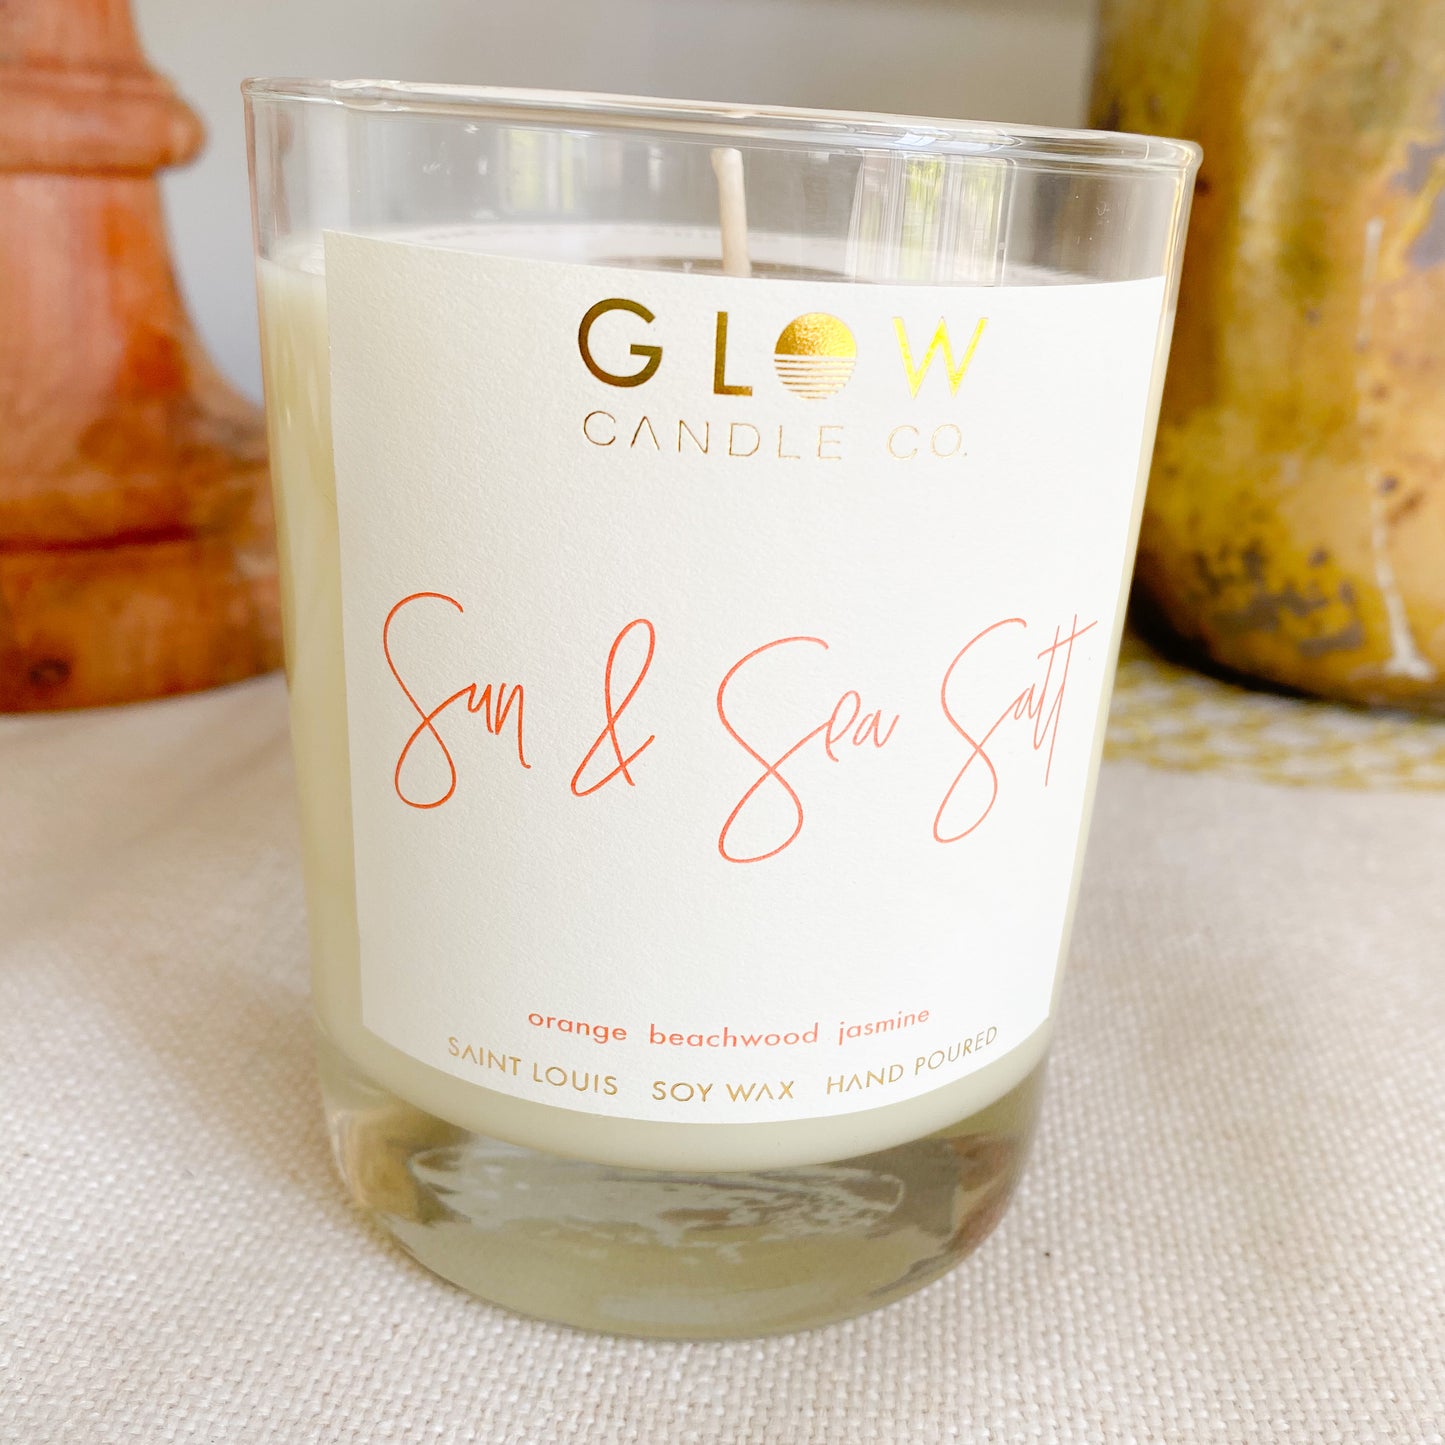 GLOW Sun & Sea Salt Candle - BelleStyle